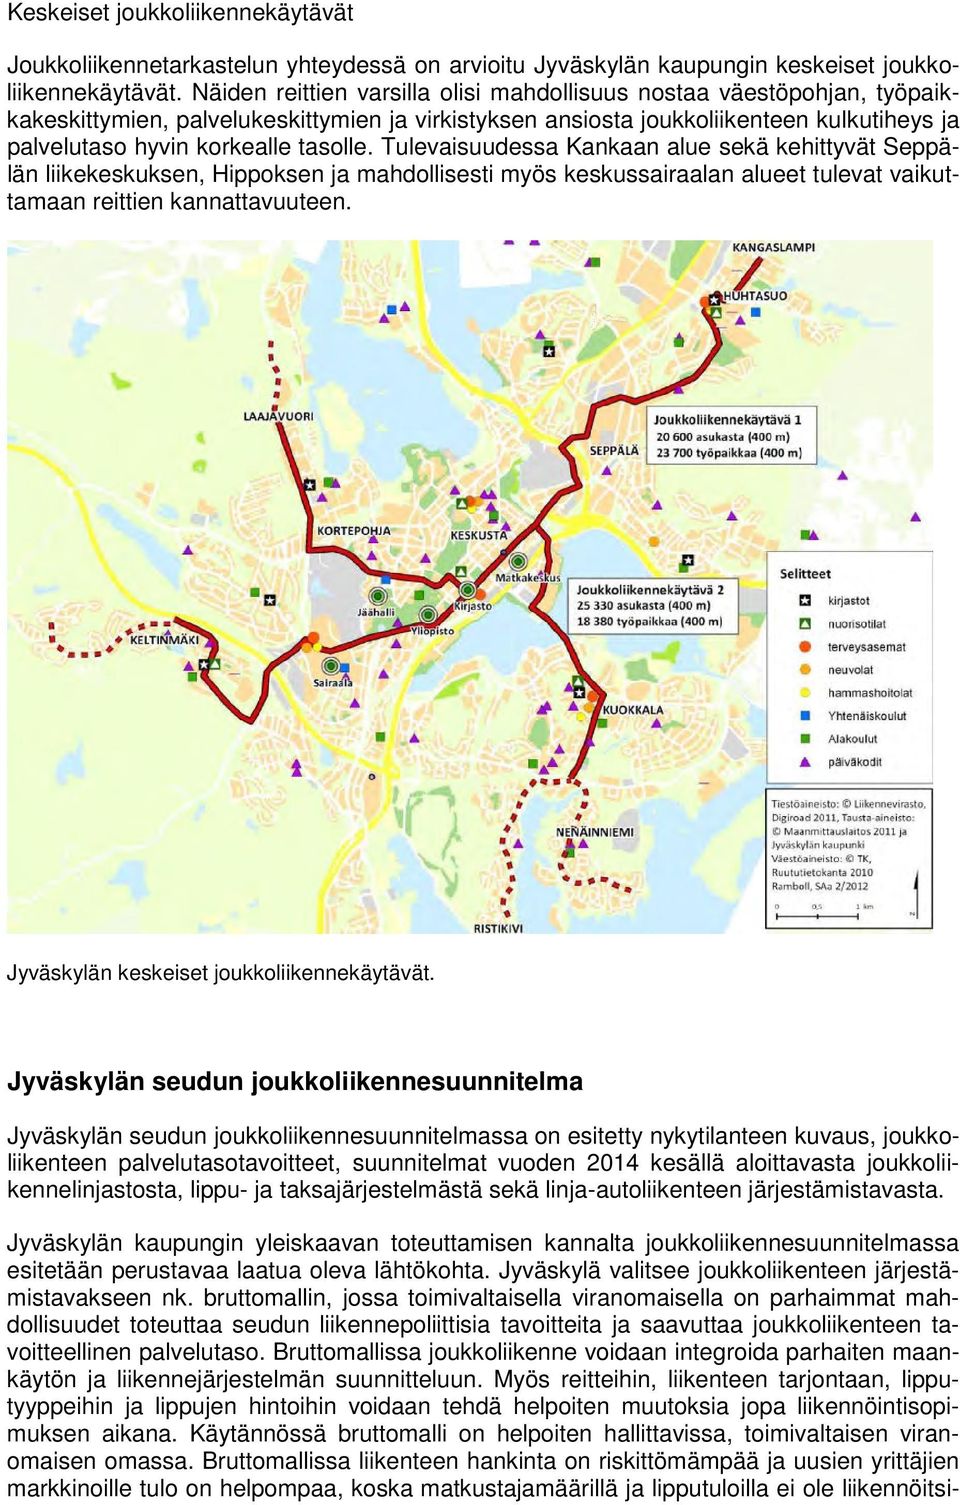 tasolle. Tulevaisuudessa Kankaan alue sekä kehittyvät Seppälän liikekeskuksen, Hippoksen ja mahdollisesti myös keskussairaalan alueet tulevat vaikuttamaan reittien kannattavuuteen.